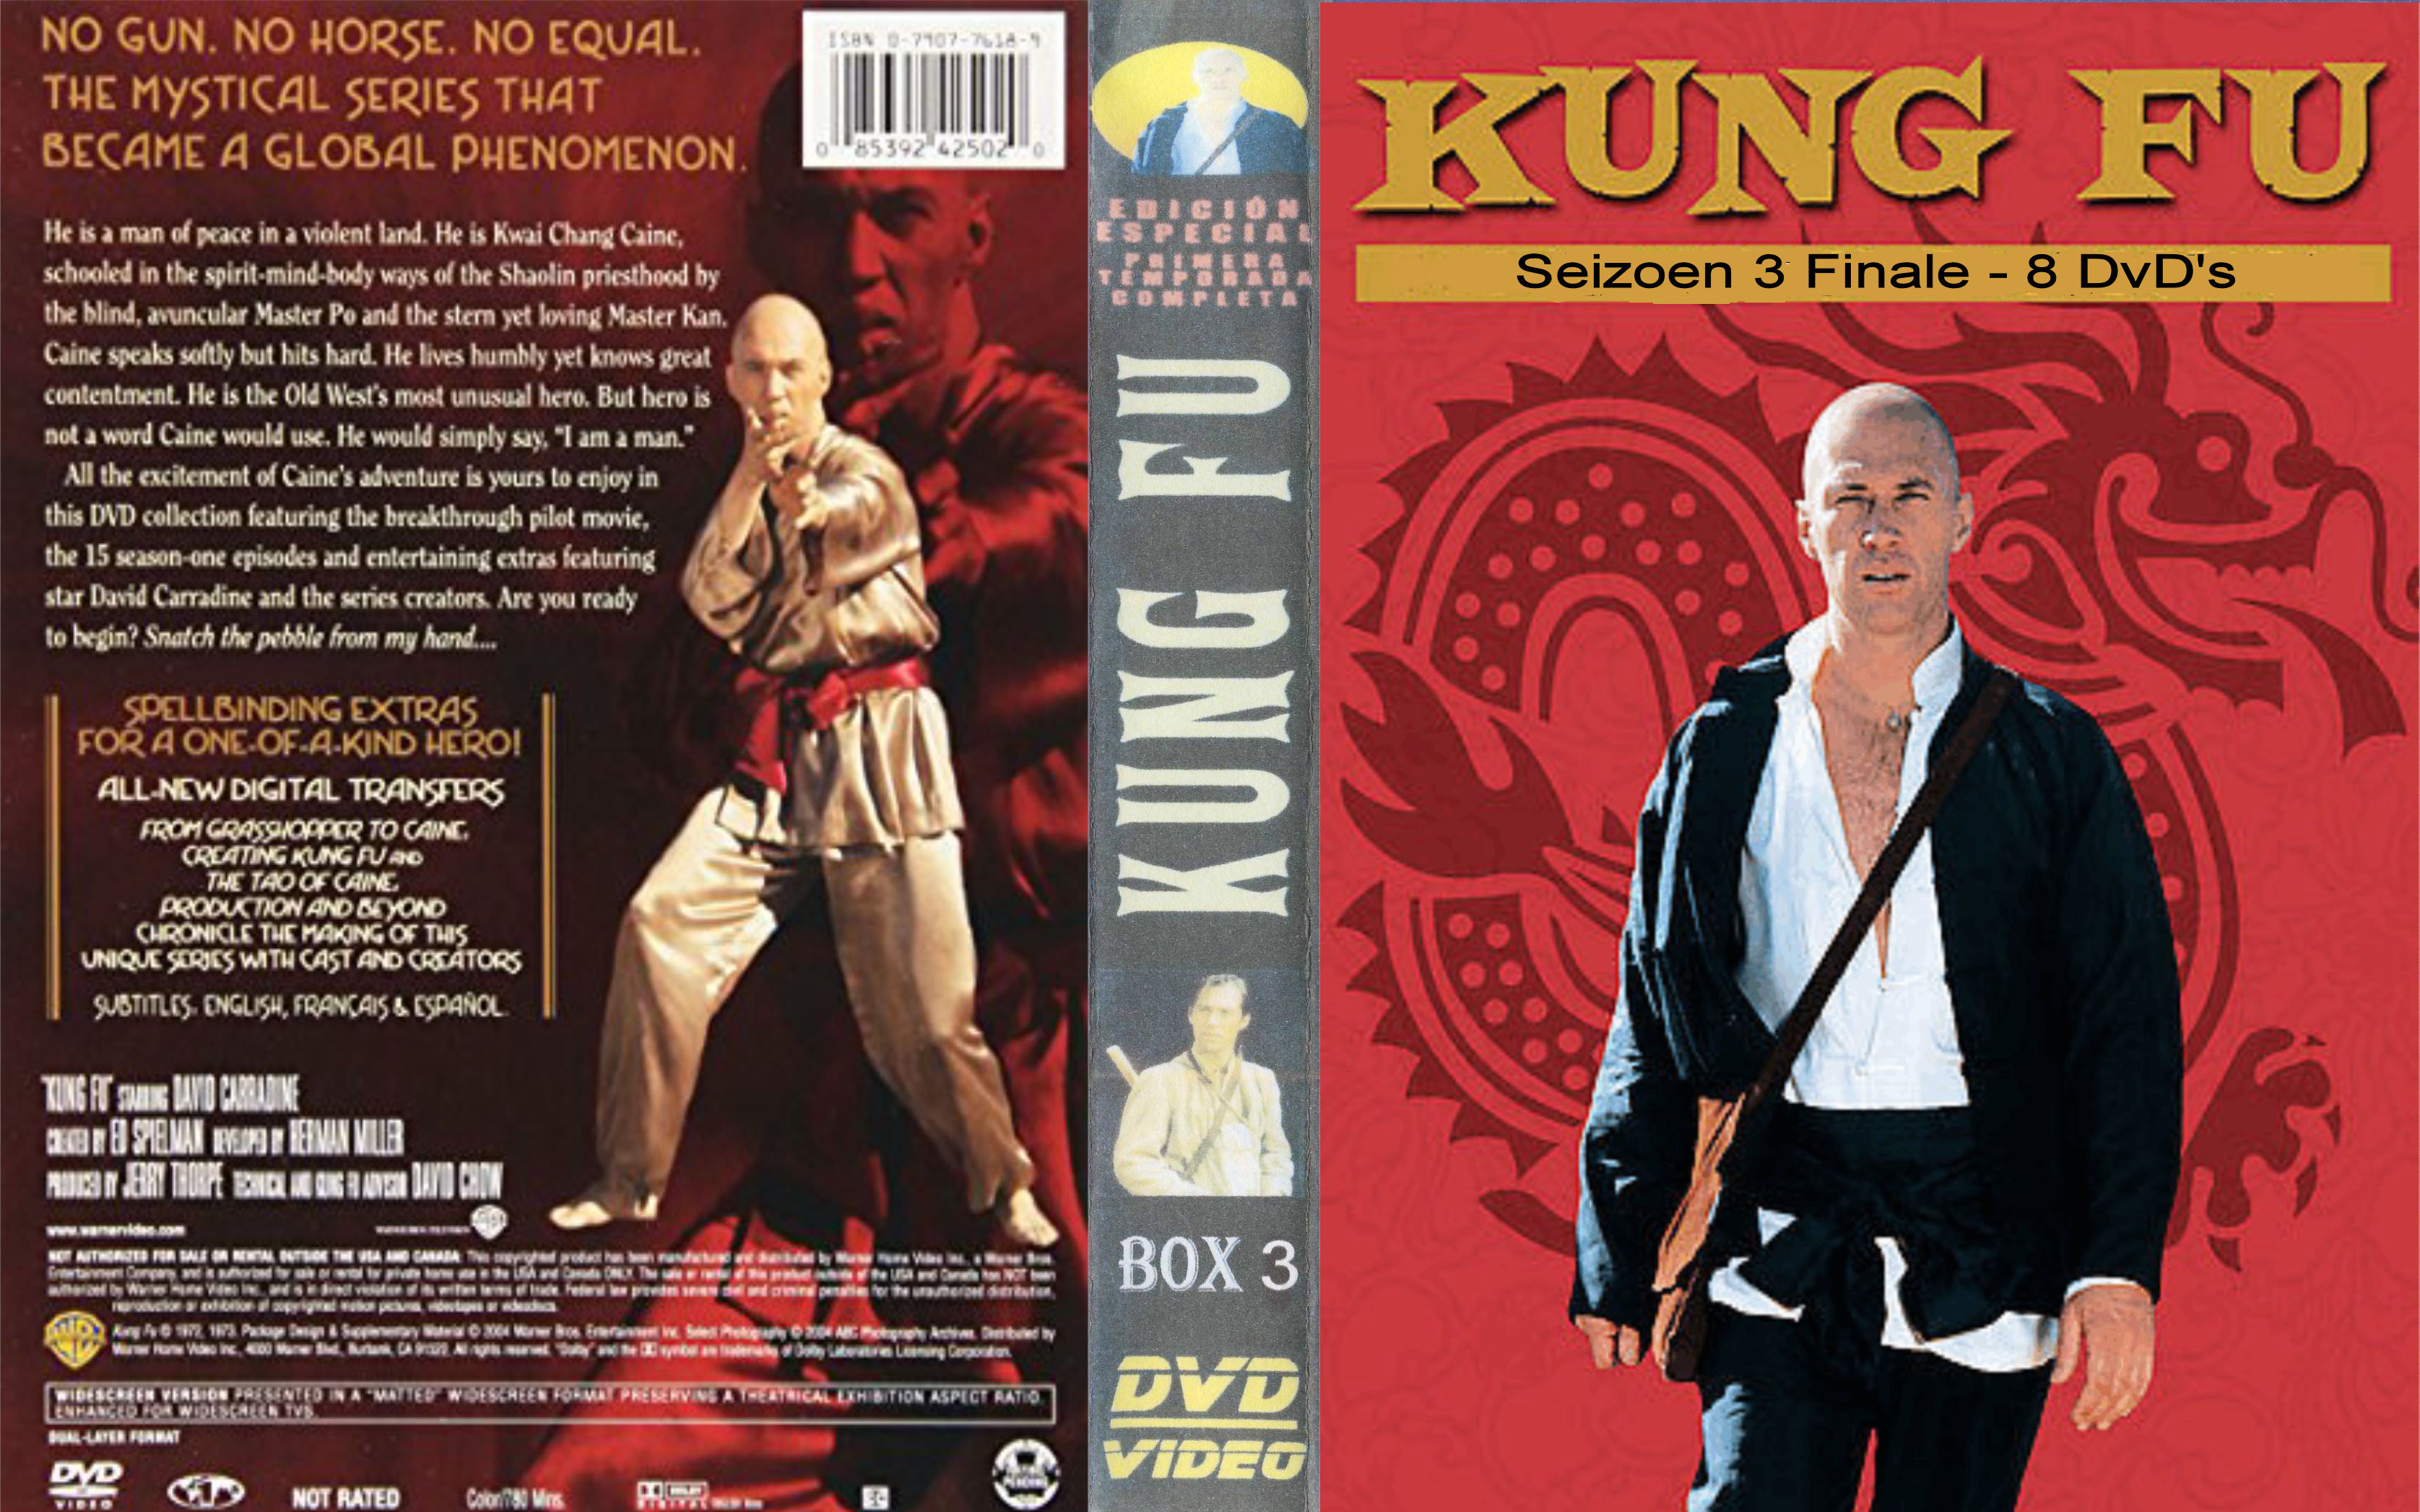 REPOST Kung Fu ( David Carradine ) 1974 - 75 Seizoen 3 - DvD 8 finale